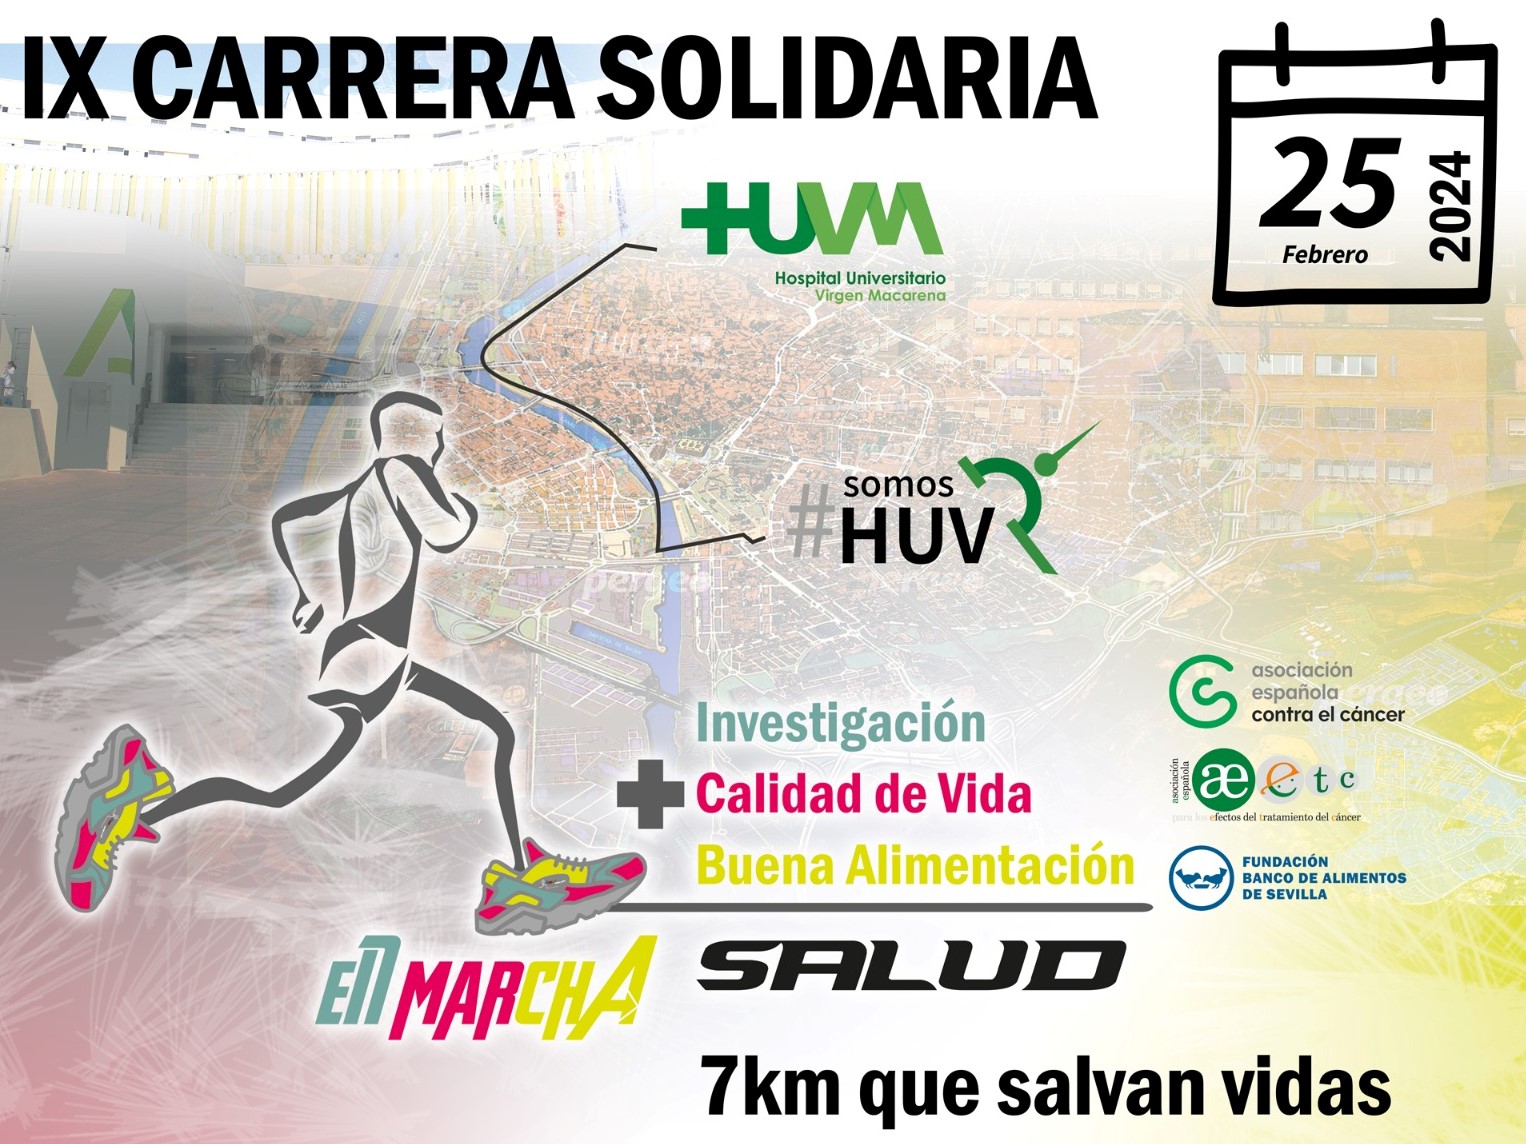 Sando participará en la XI Carrera En Marcha por la Salud que se celebrará el próximo domingo 25 de febrero en Sevilla.